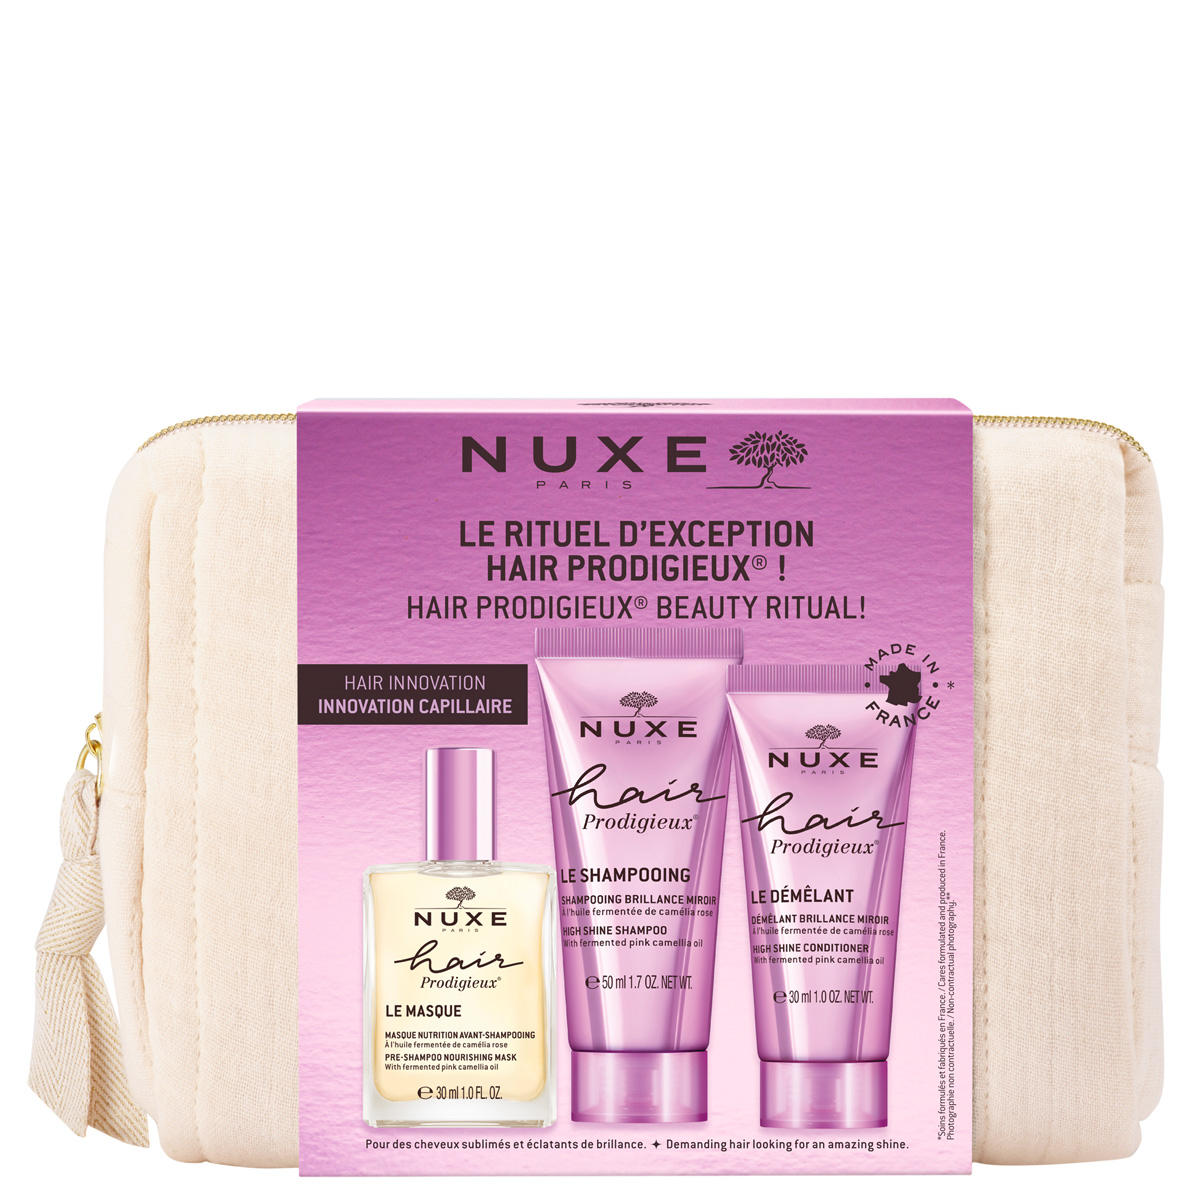 NUXE Hair Prodigieux Kit de découverte  - 1